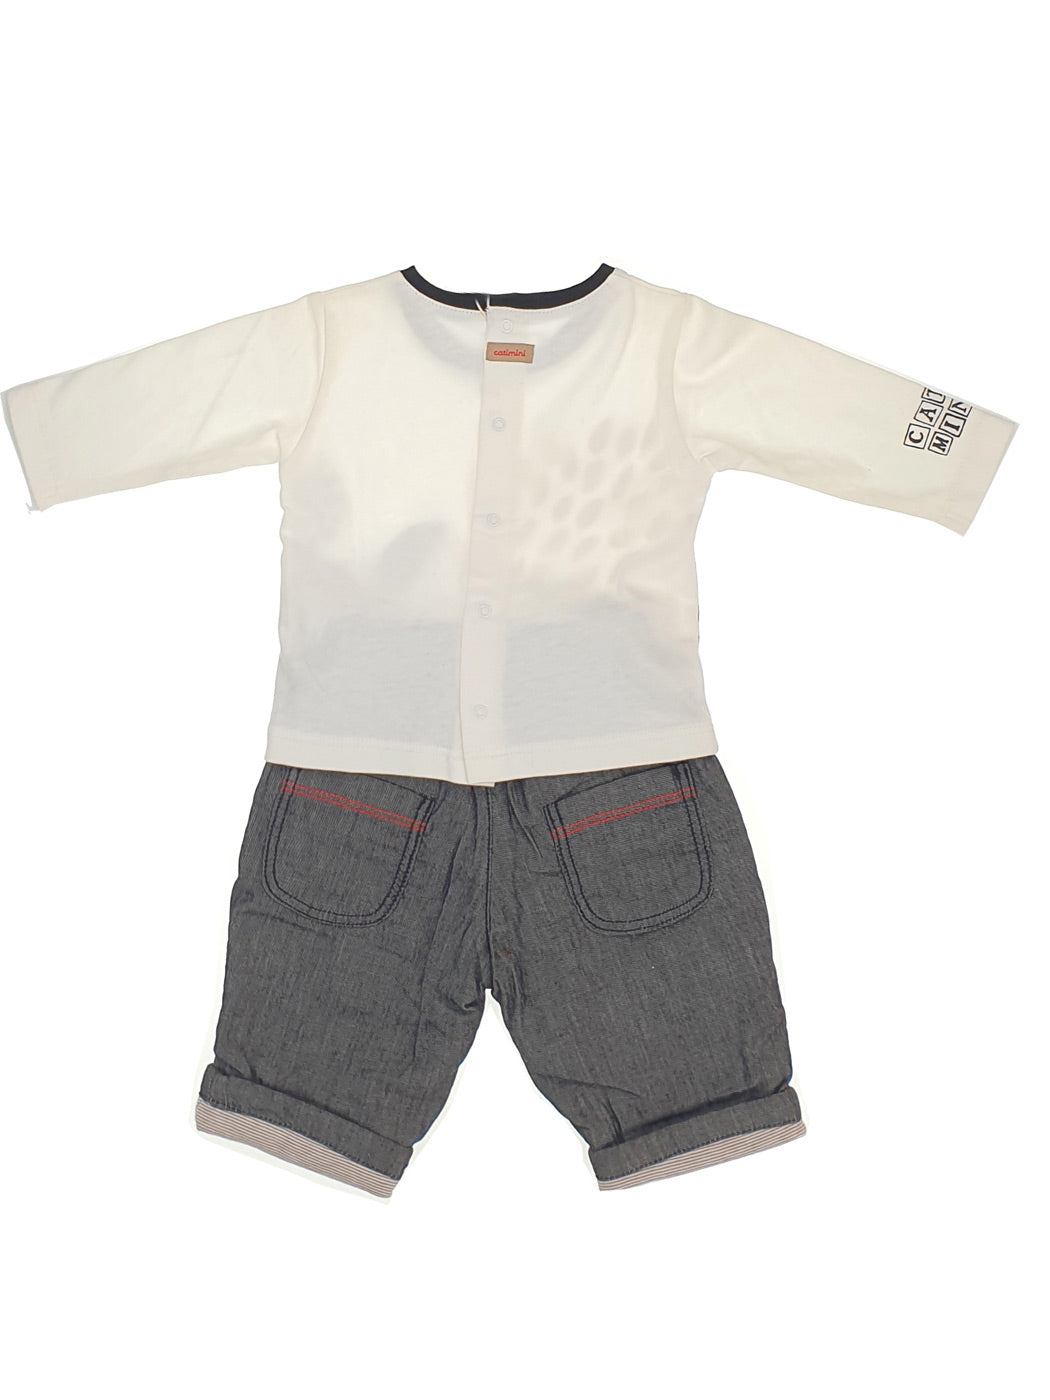 Baby boy's outfit 2pcs-C436091 Beige